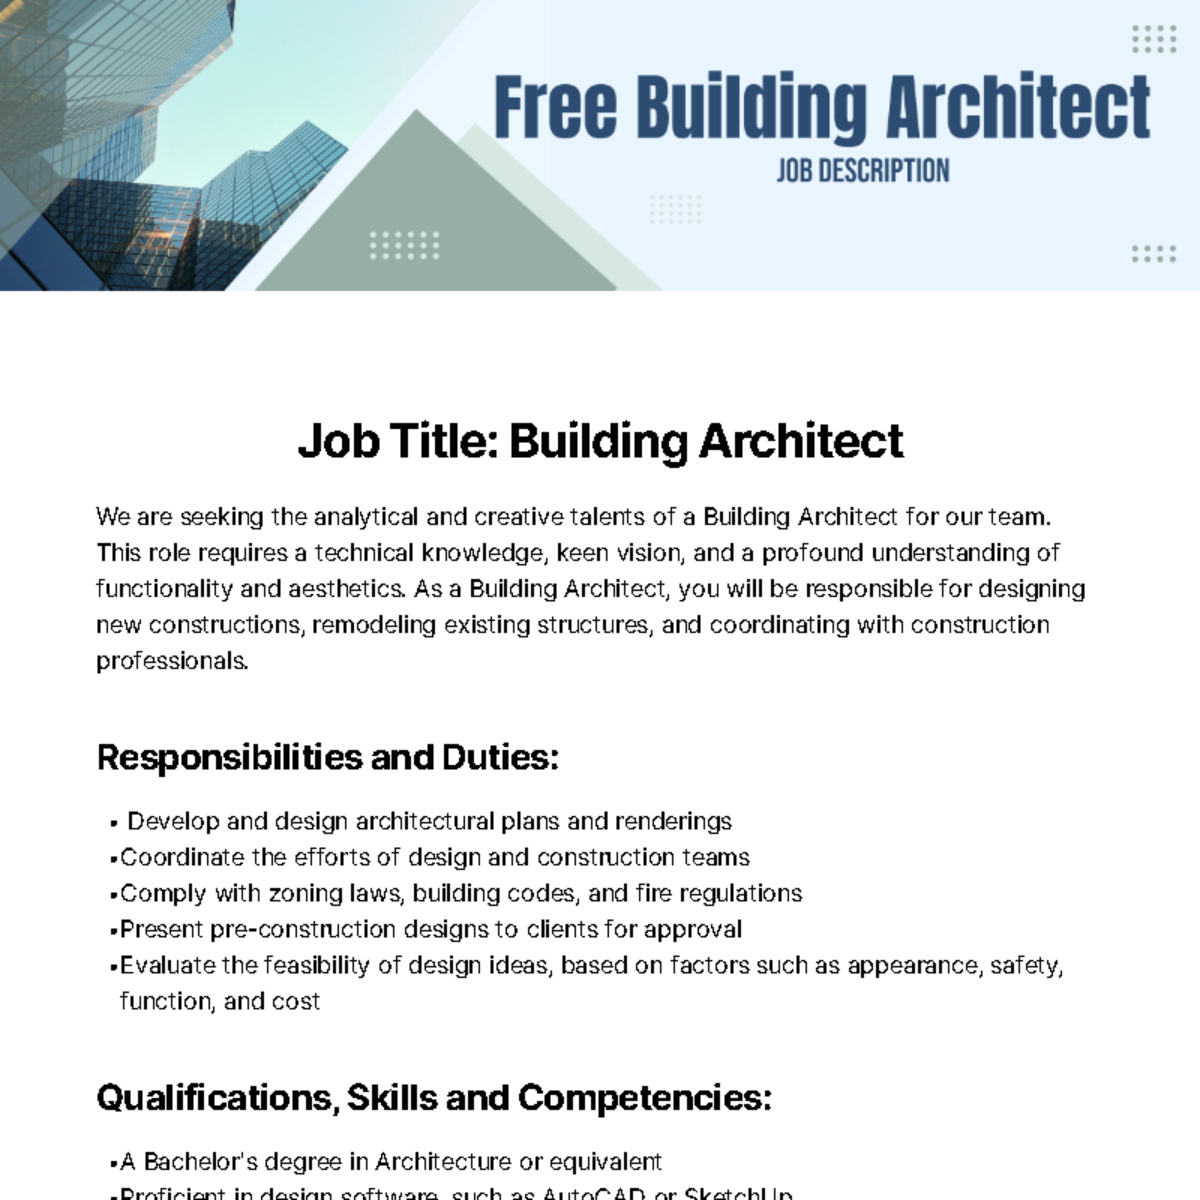 Free Building Architect Job Description Template